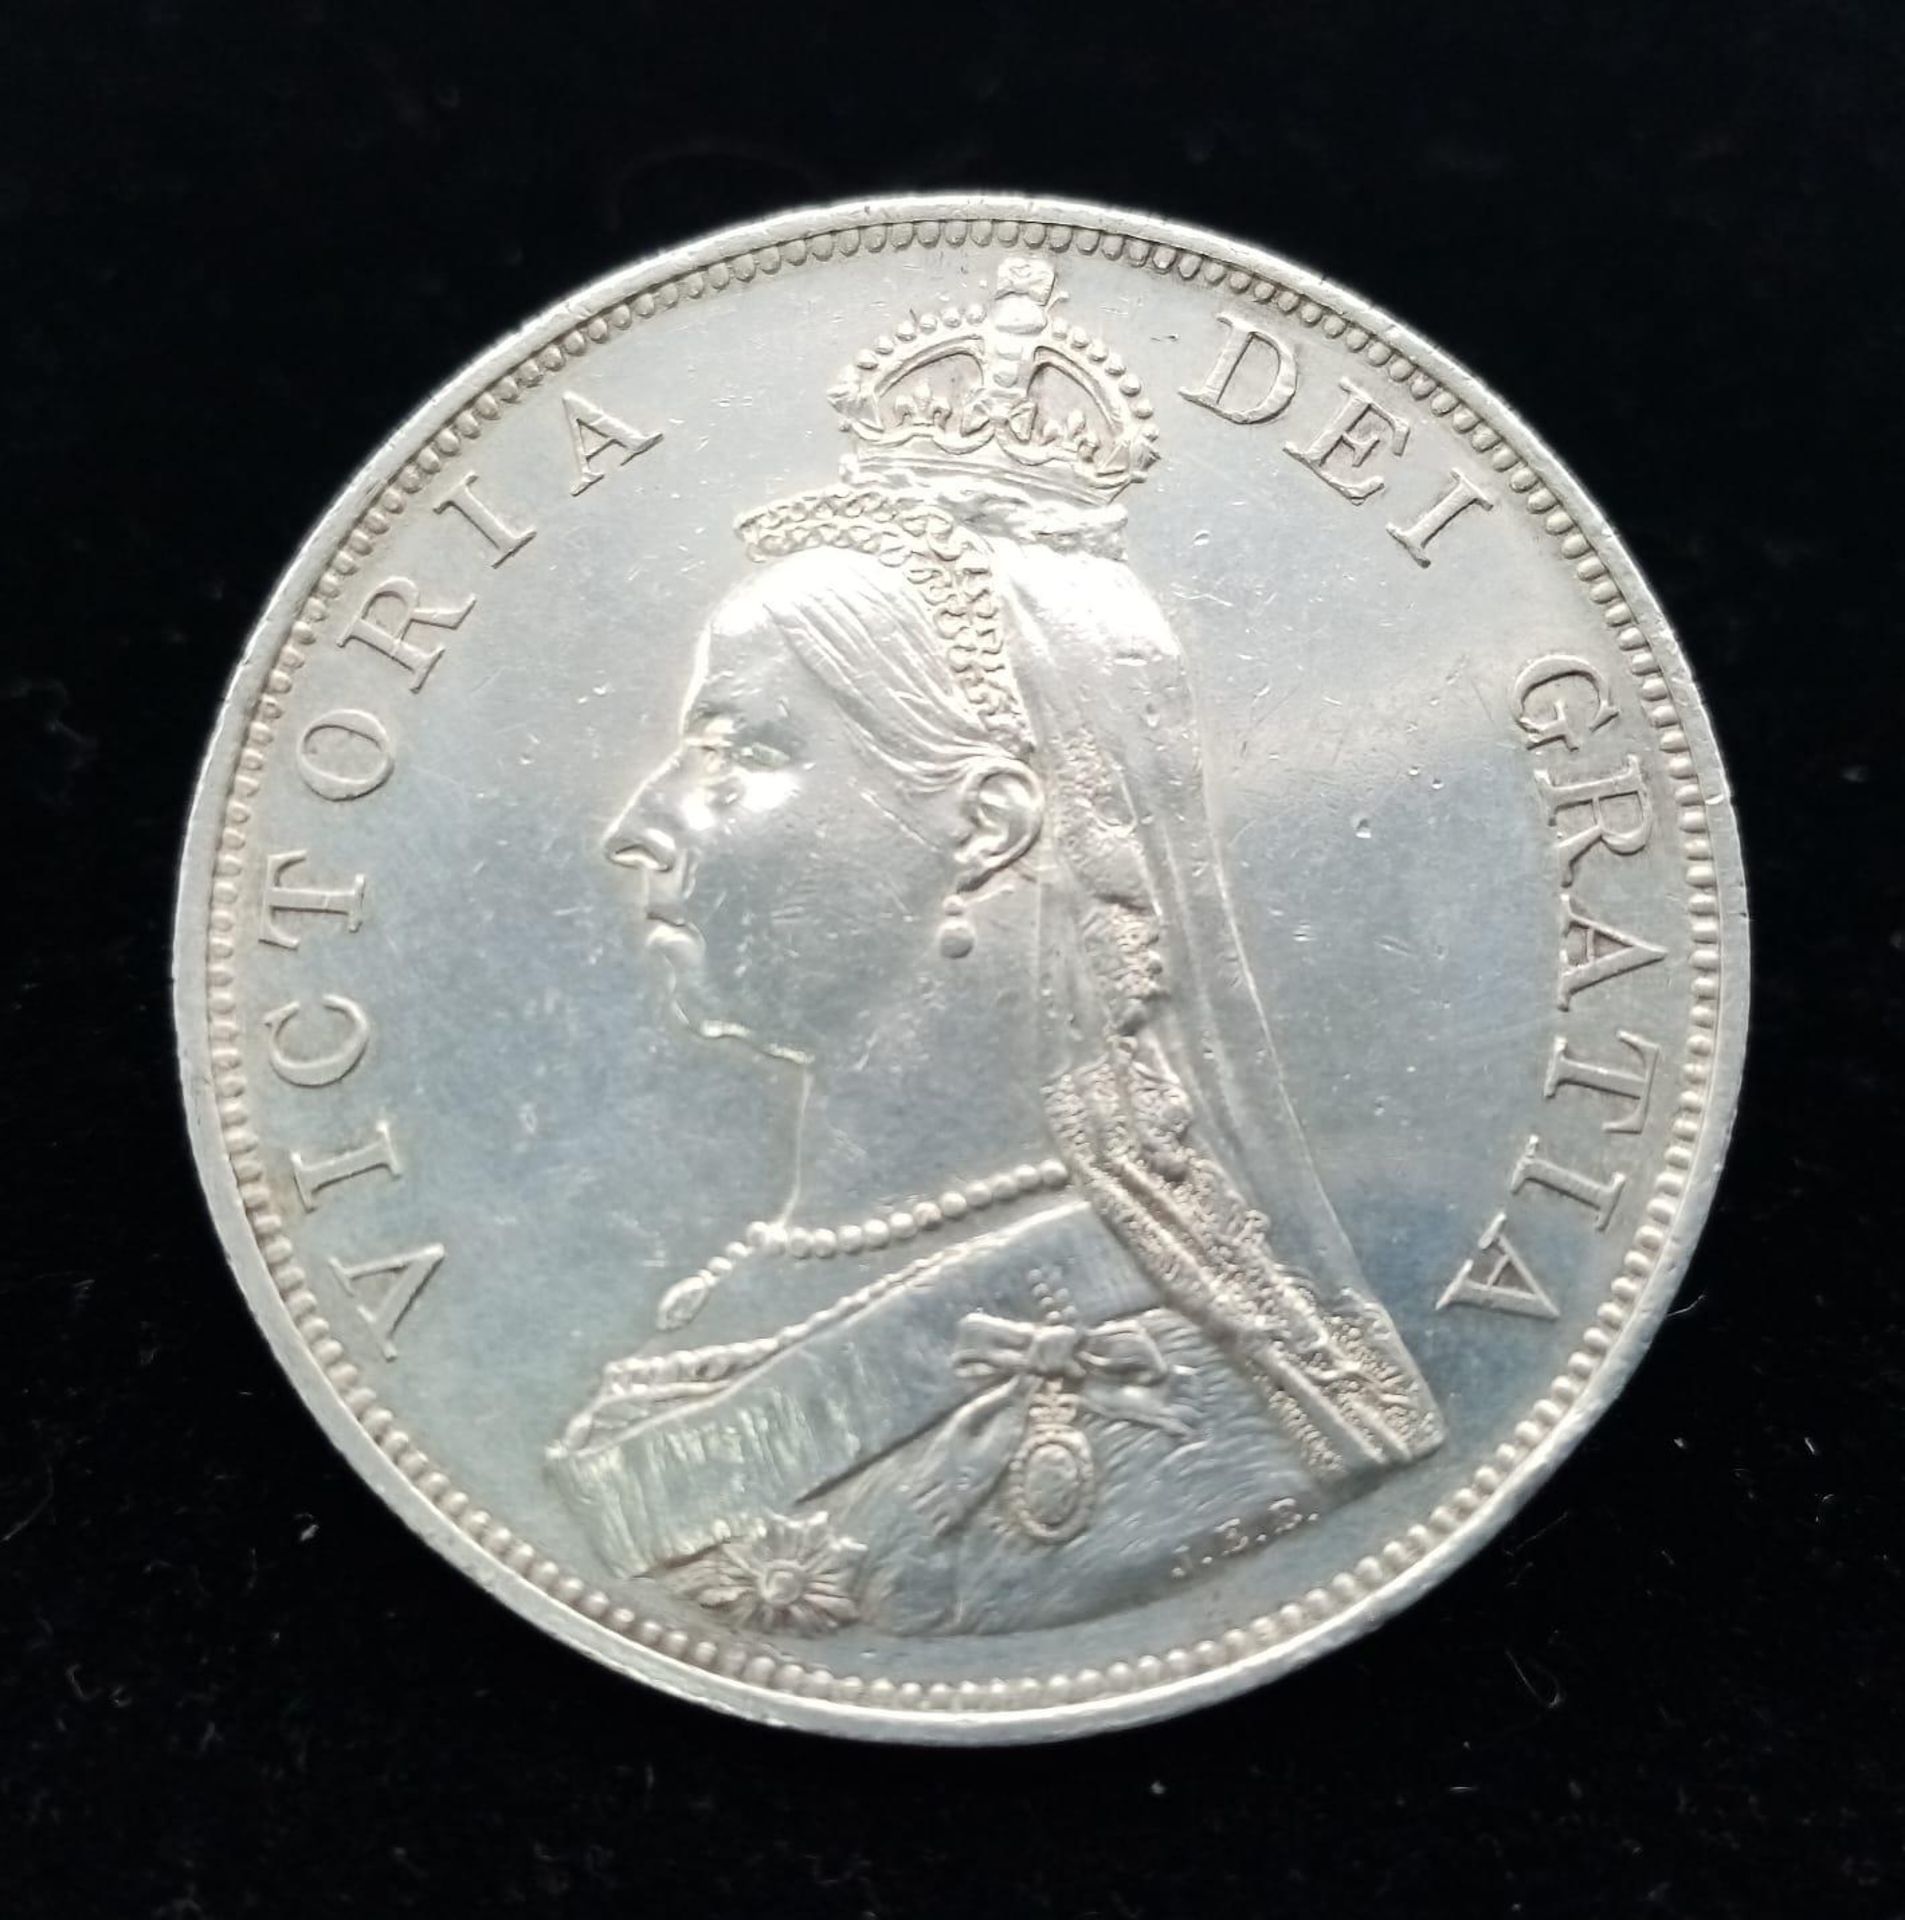 An 1887 Queen Victoria Double Florin Silver Coin. EF grade but please see photos. - Image 2 of 2